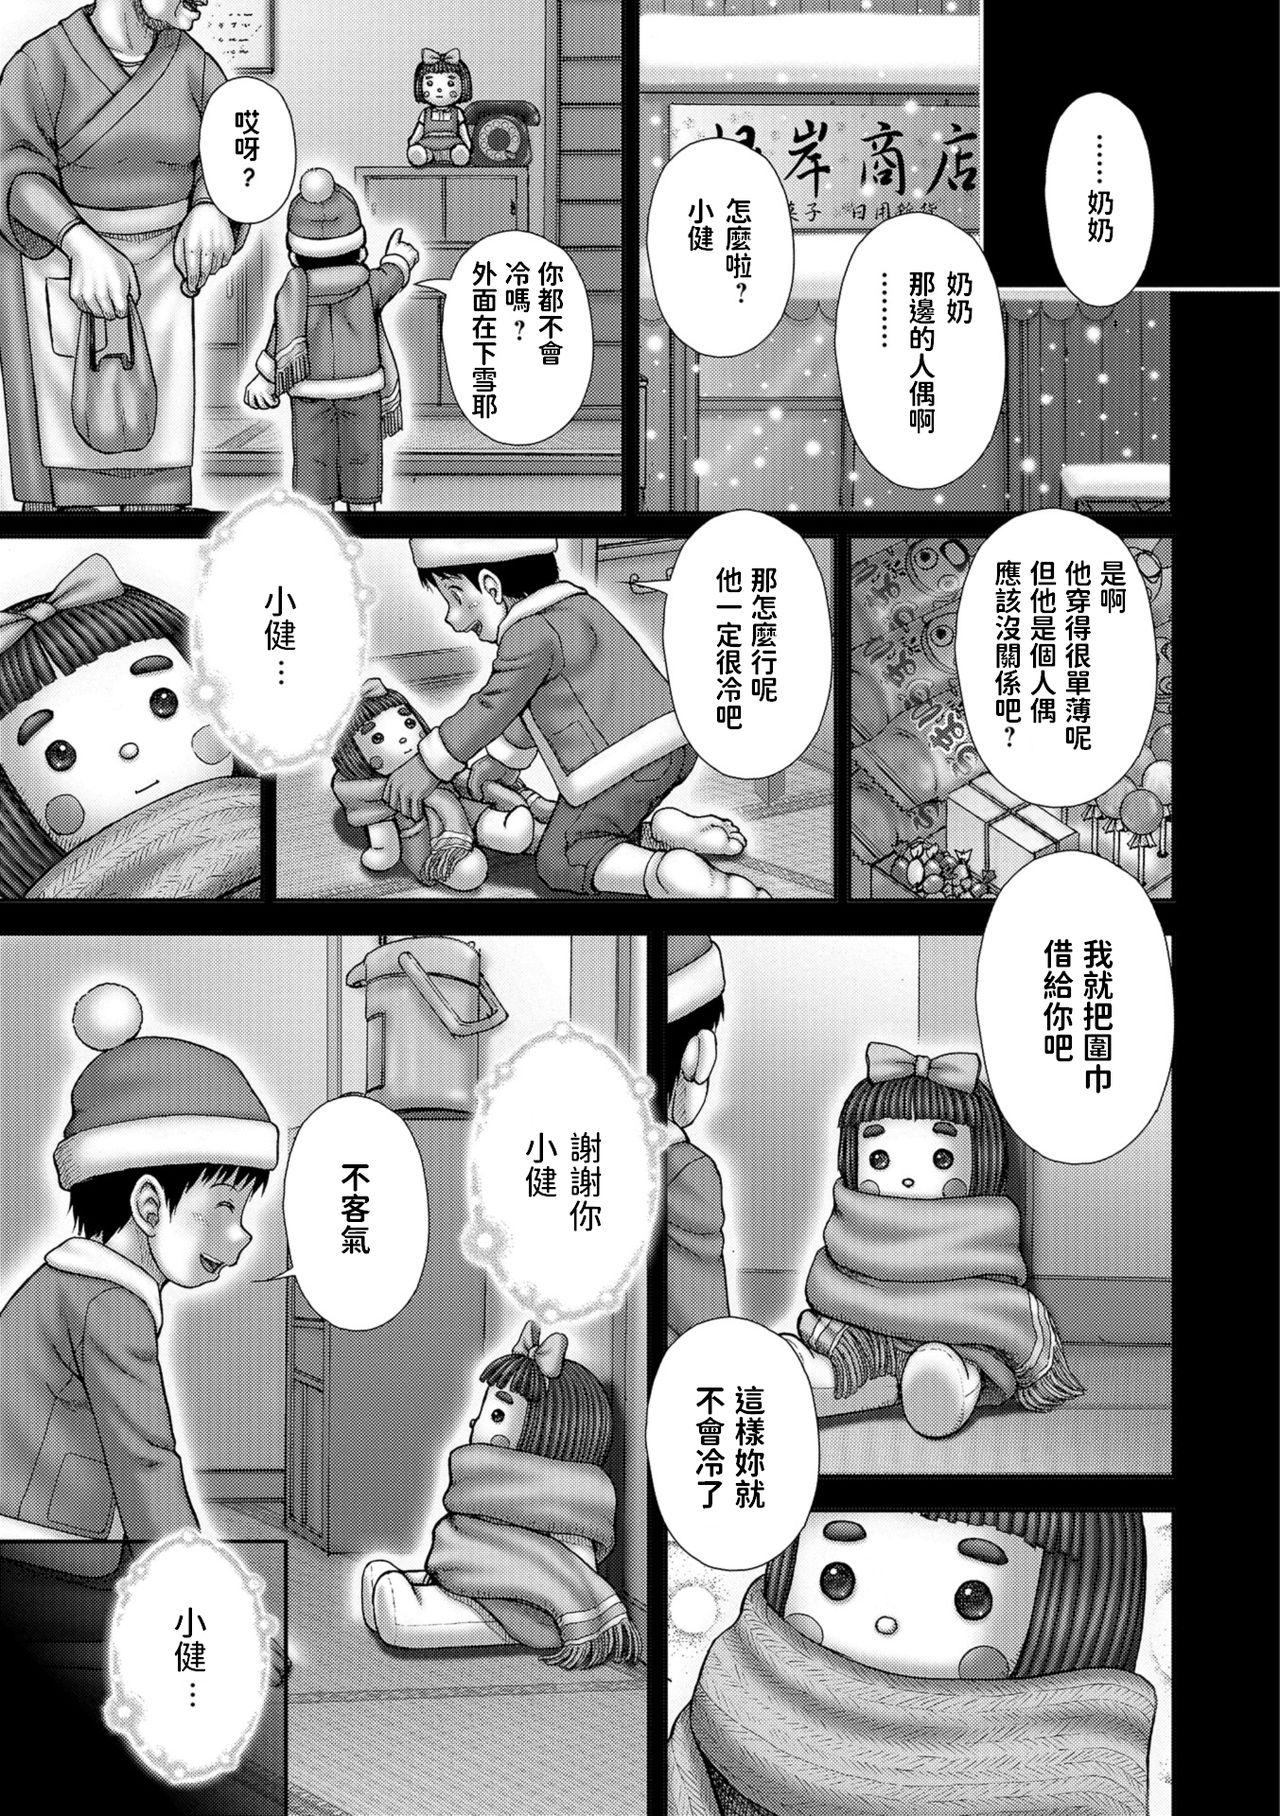 [いトう]  Attendant 付き添い人  (コミック Mate legend Vol.24 2018年12月号)  中文翻譯 0